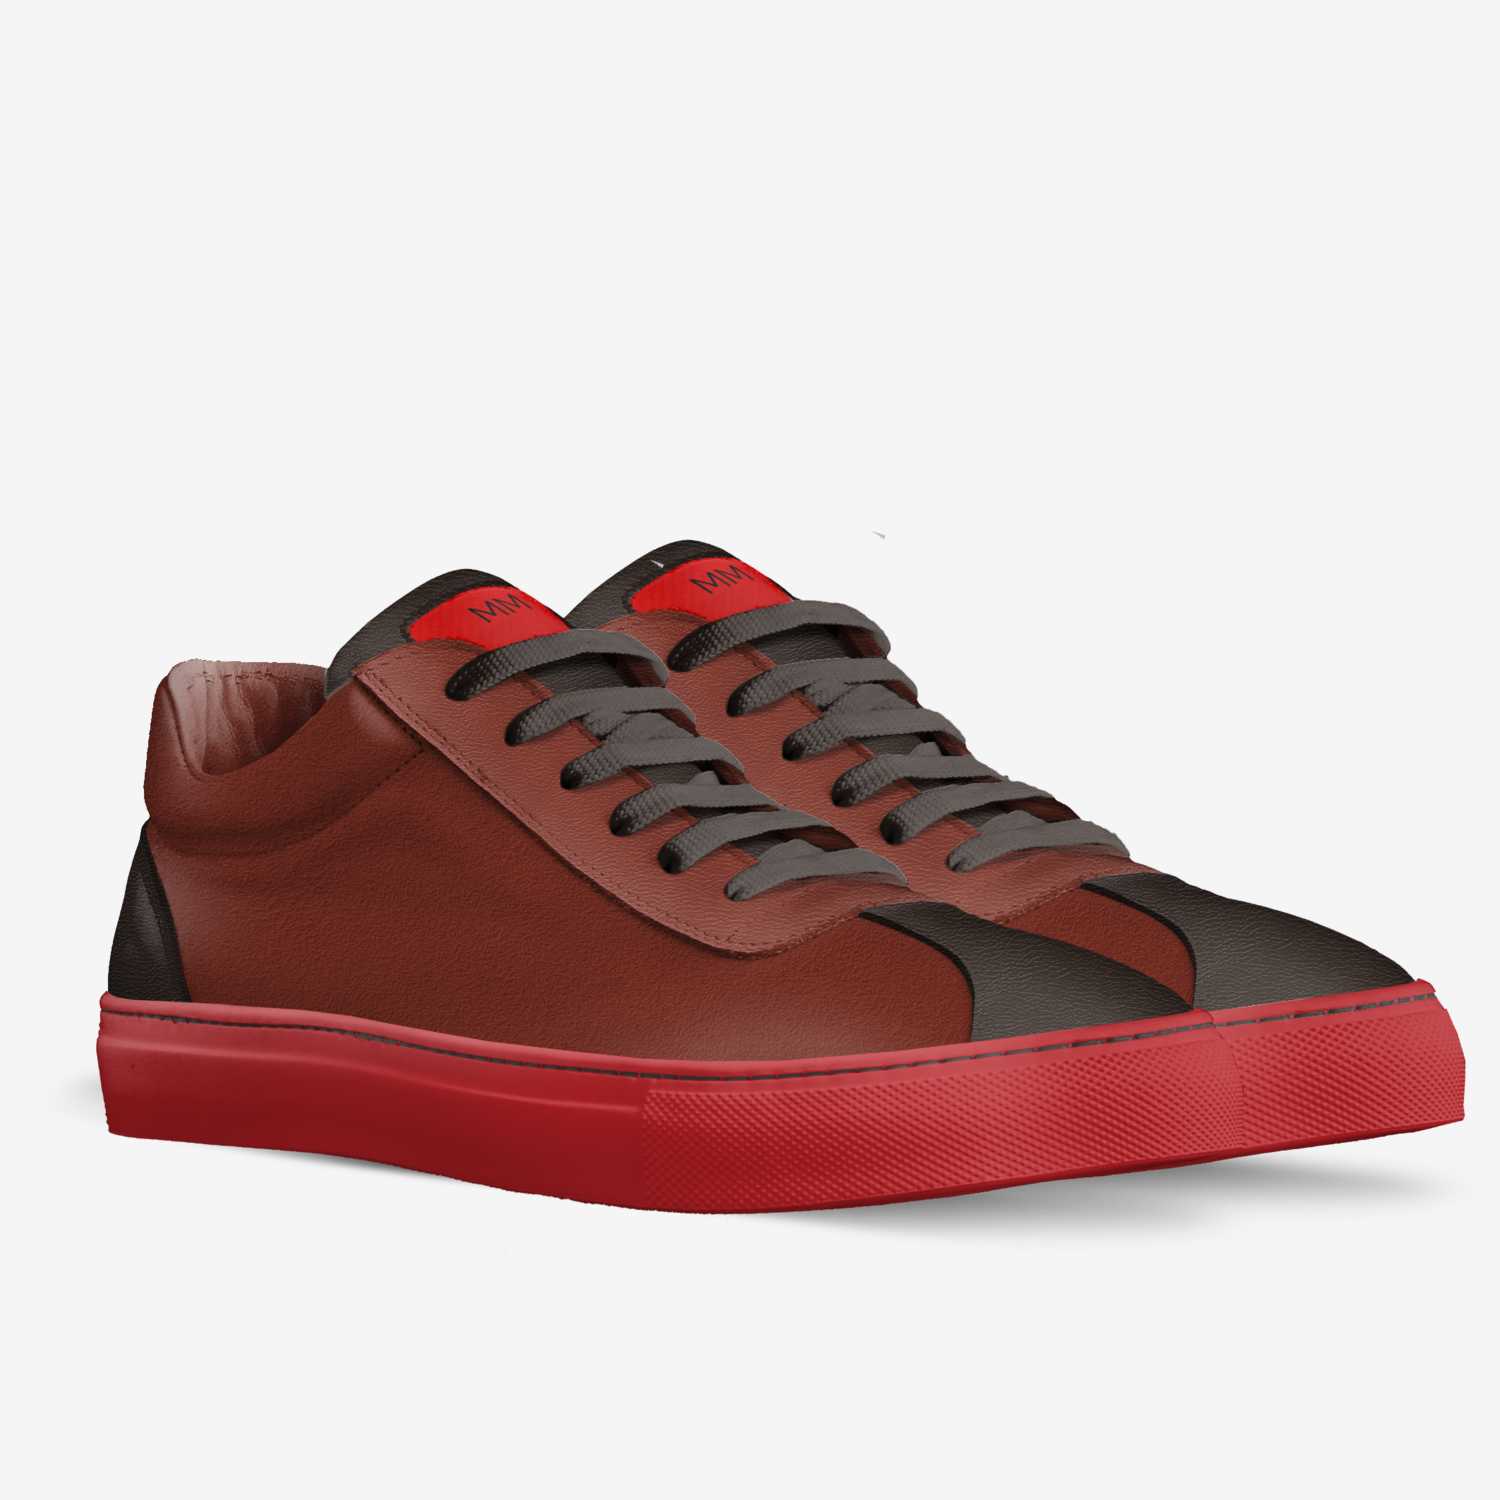 Decimal Illustrer Sølv MM Footwear | A Custom Shoe concept by Essence Ester